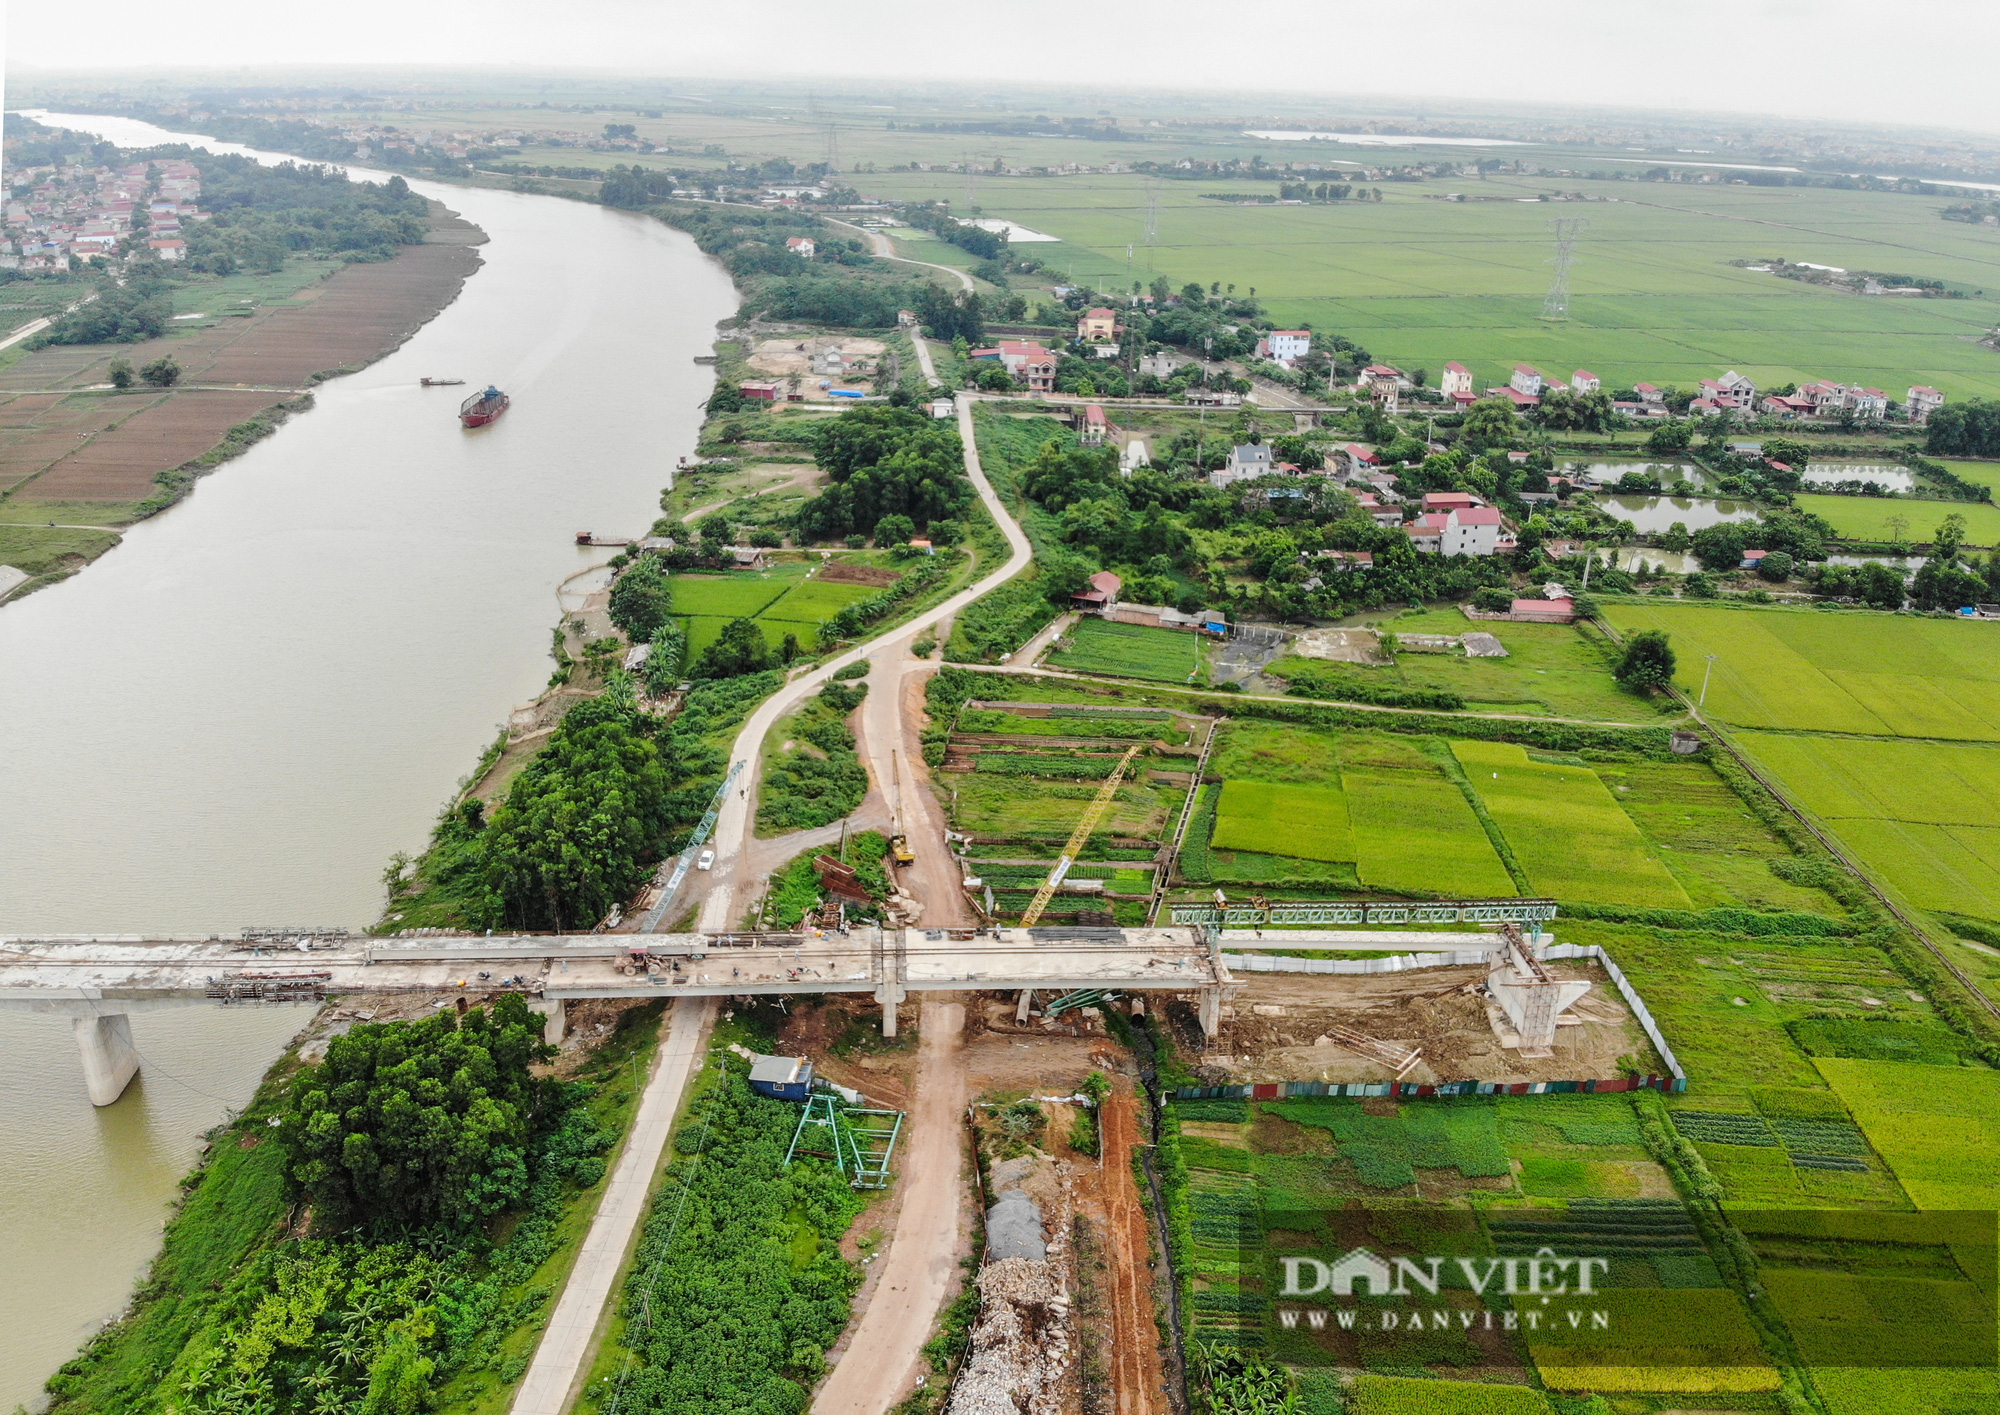 Chuẩn bị hoàn thiện cây cầu vượt sông nối liền Hà Nội - Bắc Giang - Ảnh 13.